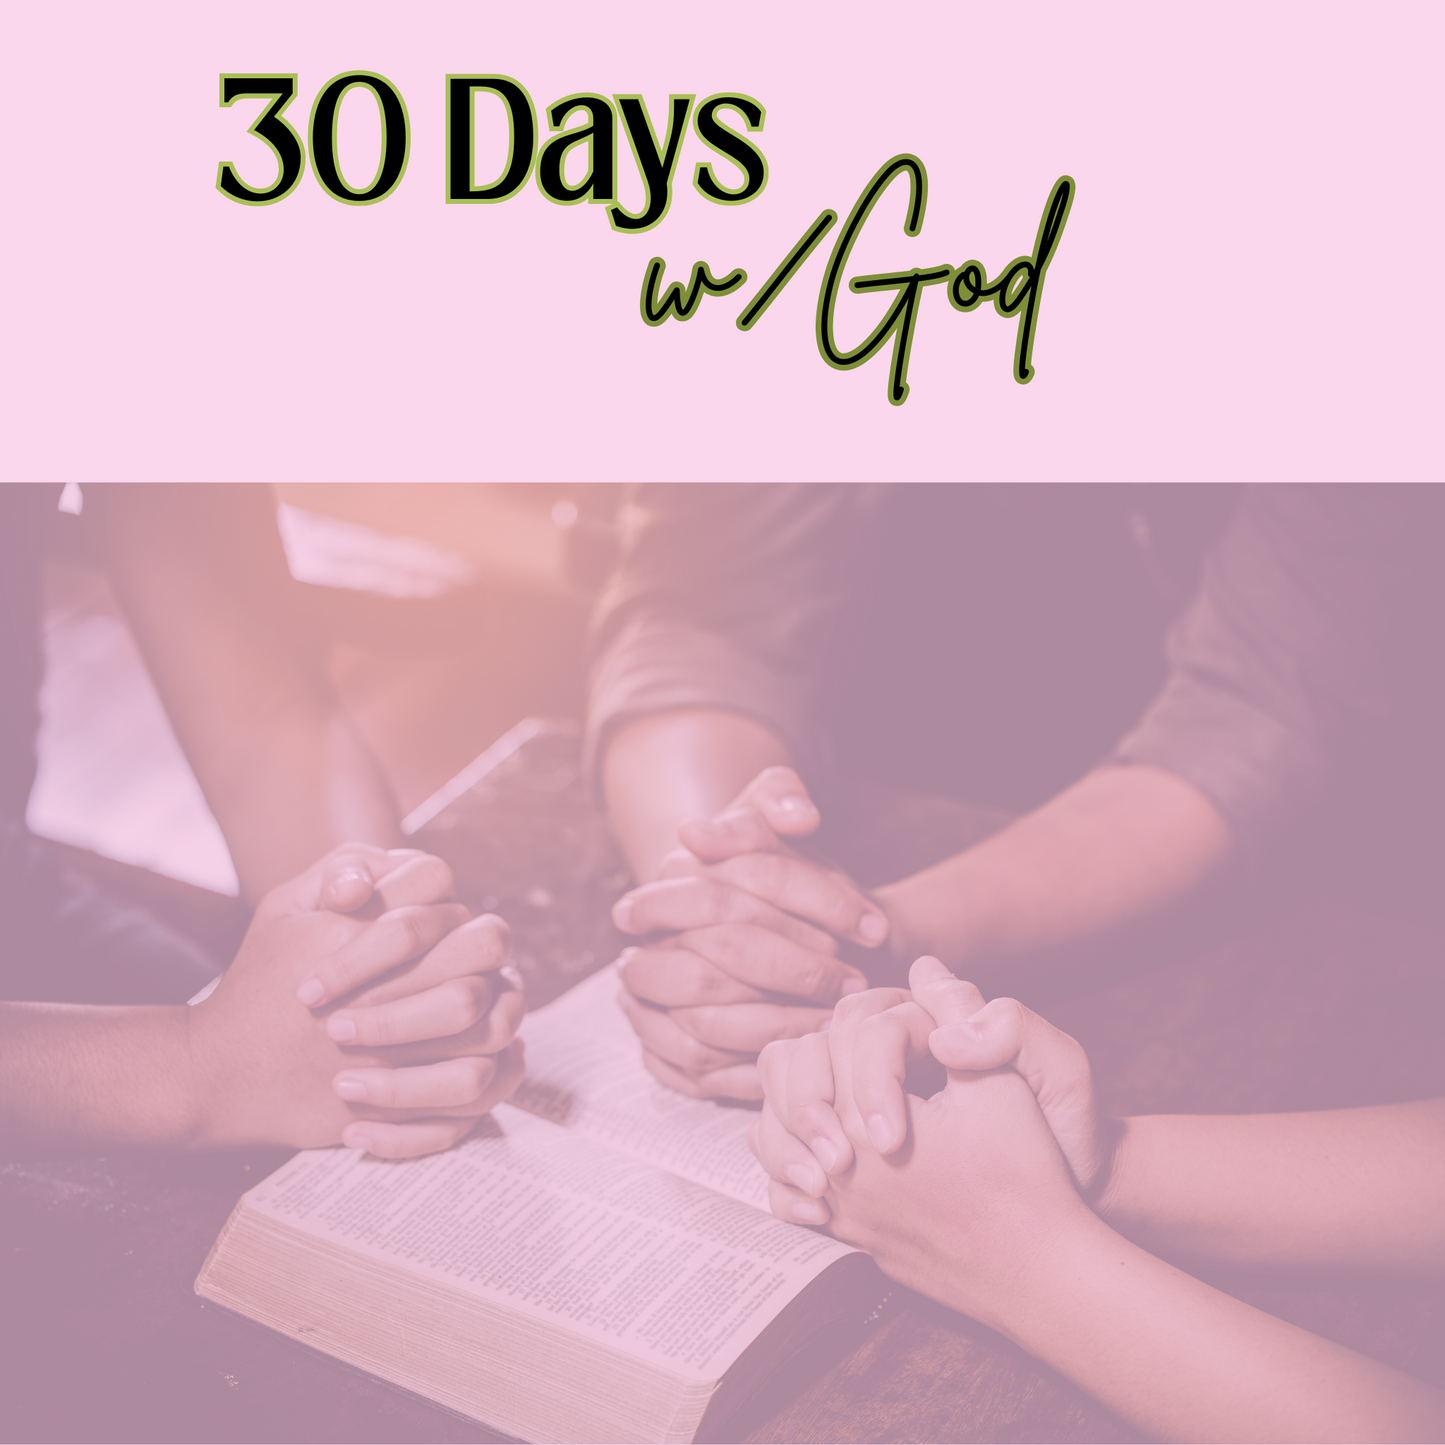 30 Days w/God